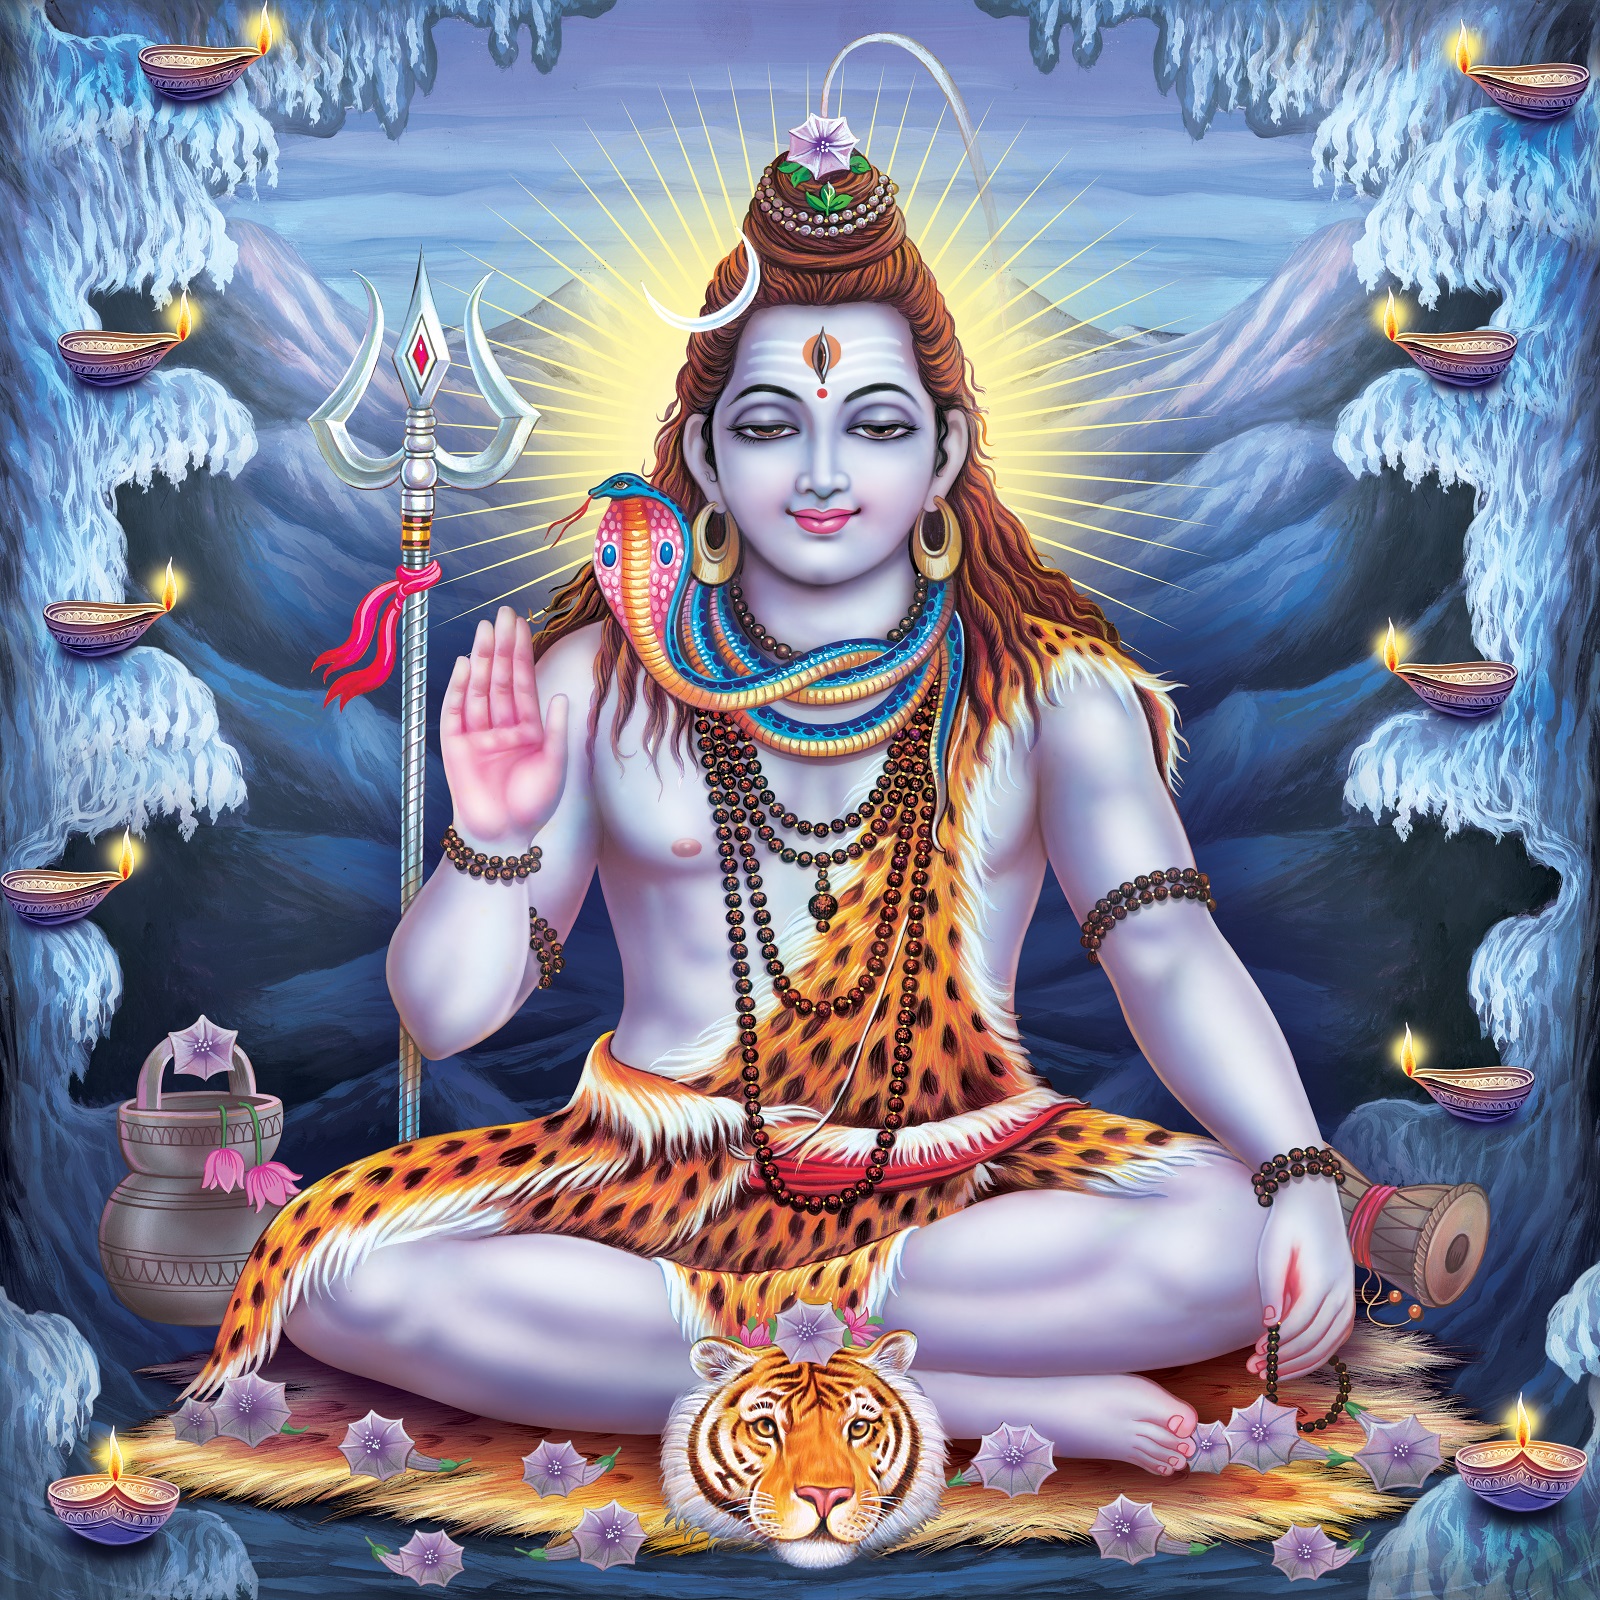 भगवान शिव को प्रिय है तीन अंक, जानें इसके पीछे का रहस्य – News18 हिंदी